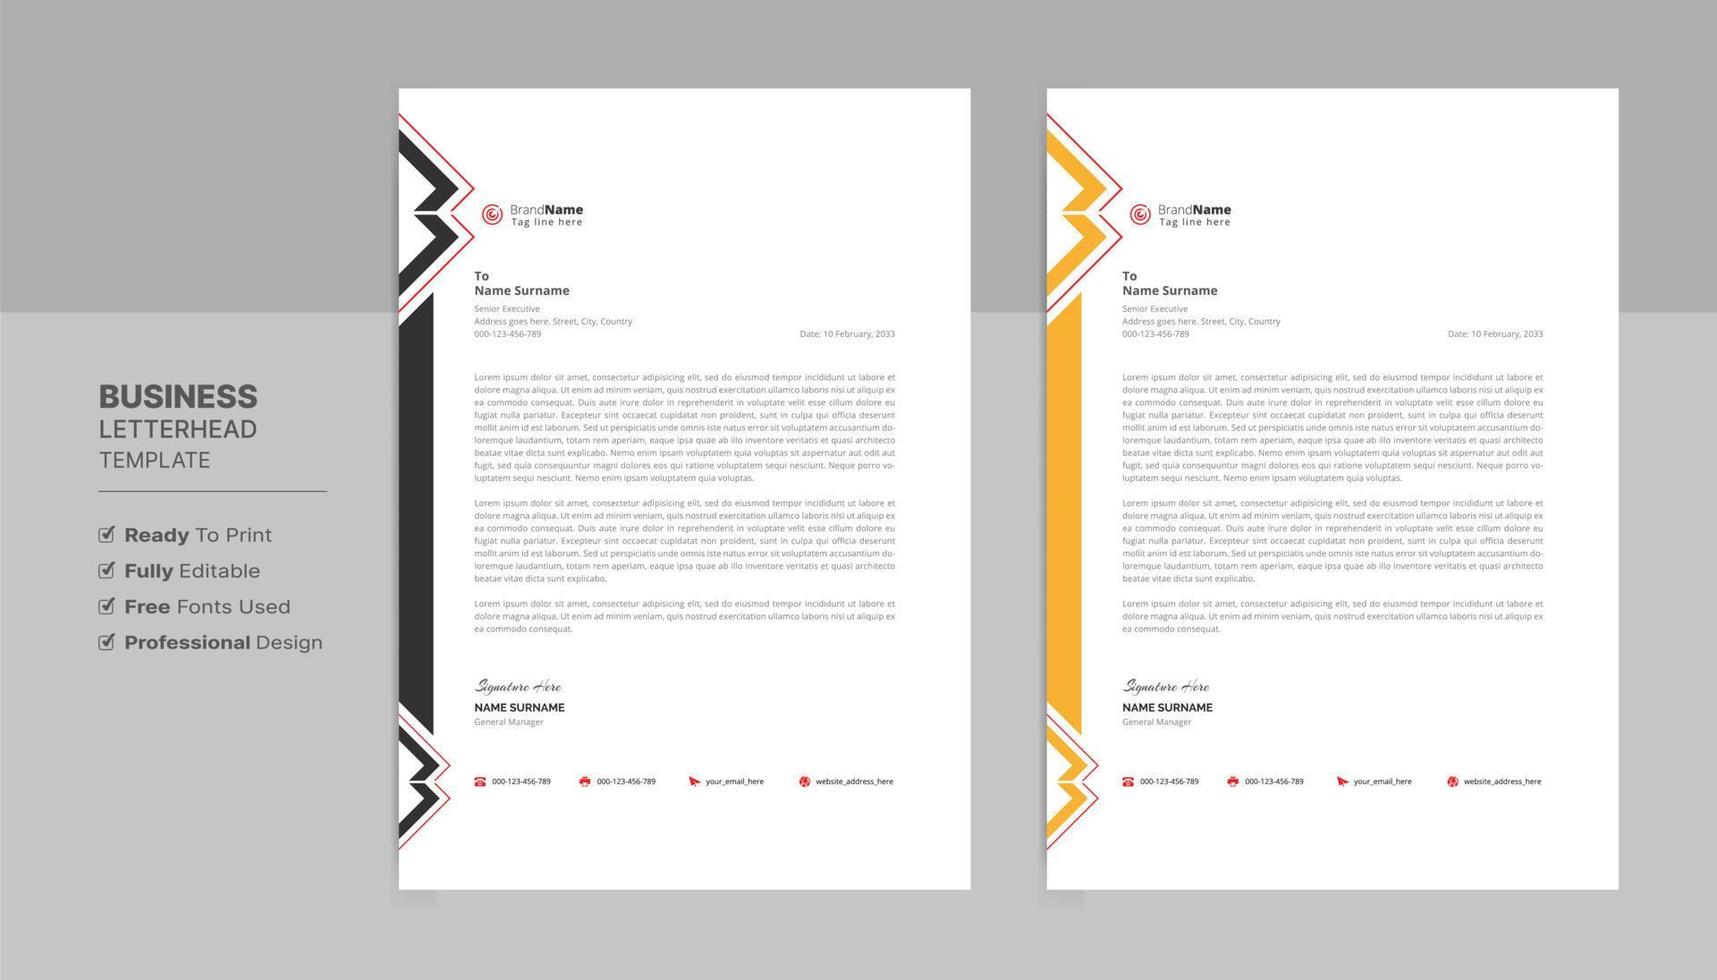 Briefkopf-Formatvorlage, Briefkopf-Designvorlage im Business-Stil. Firmenbriefkopf-Vorlagendesigns. vektor